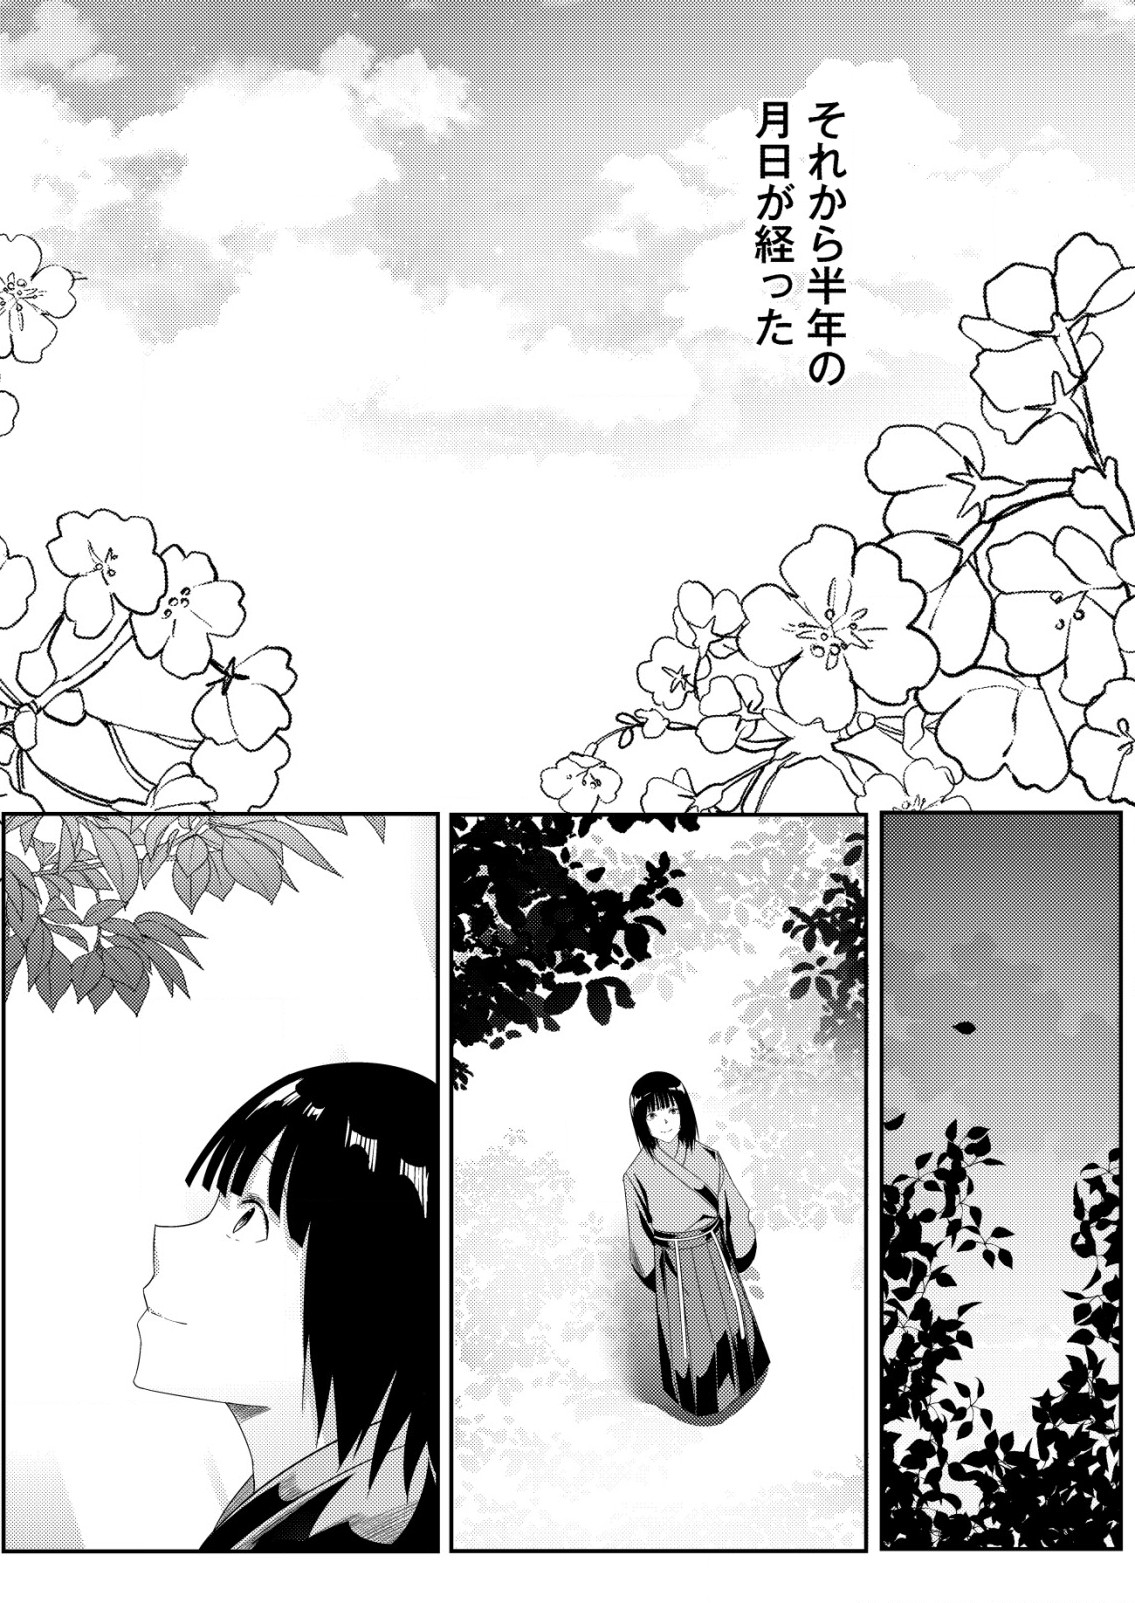 Isekai De kenja No Ishi To Yoba Rete Imasu - Chapter 23 - Page 3